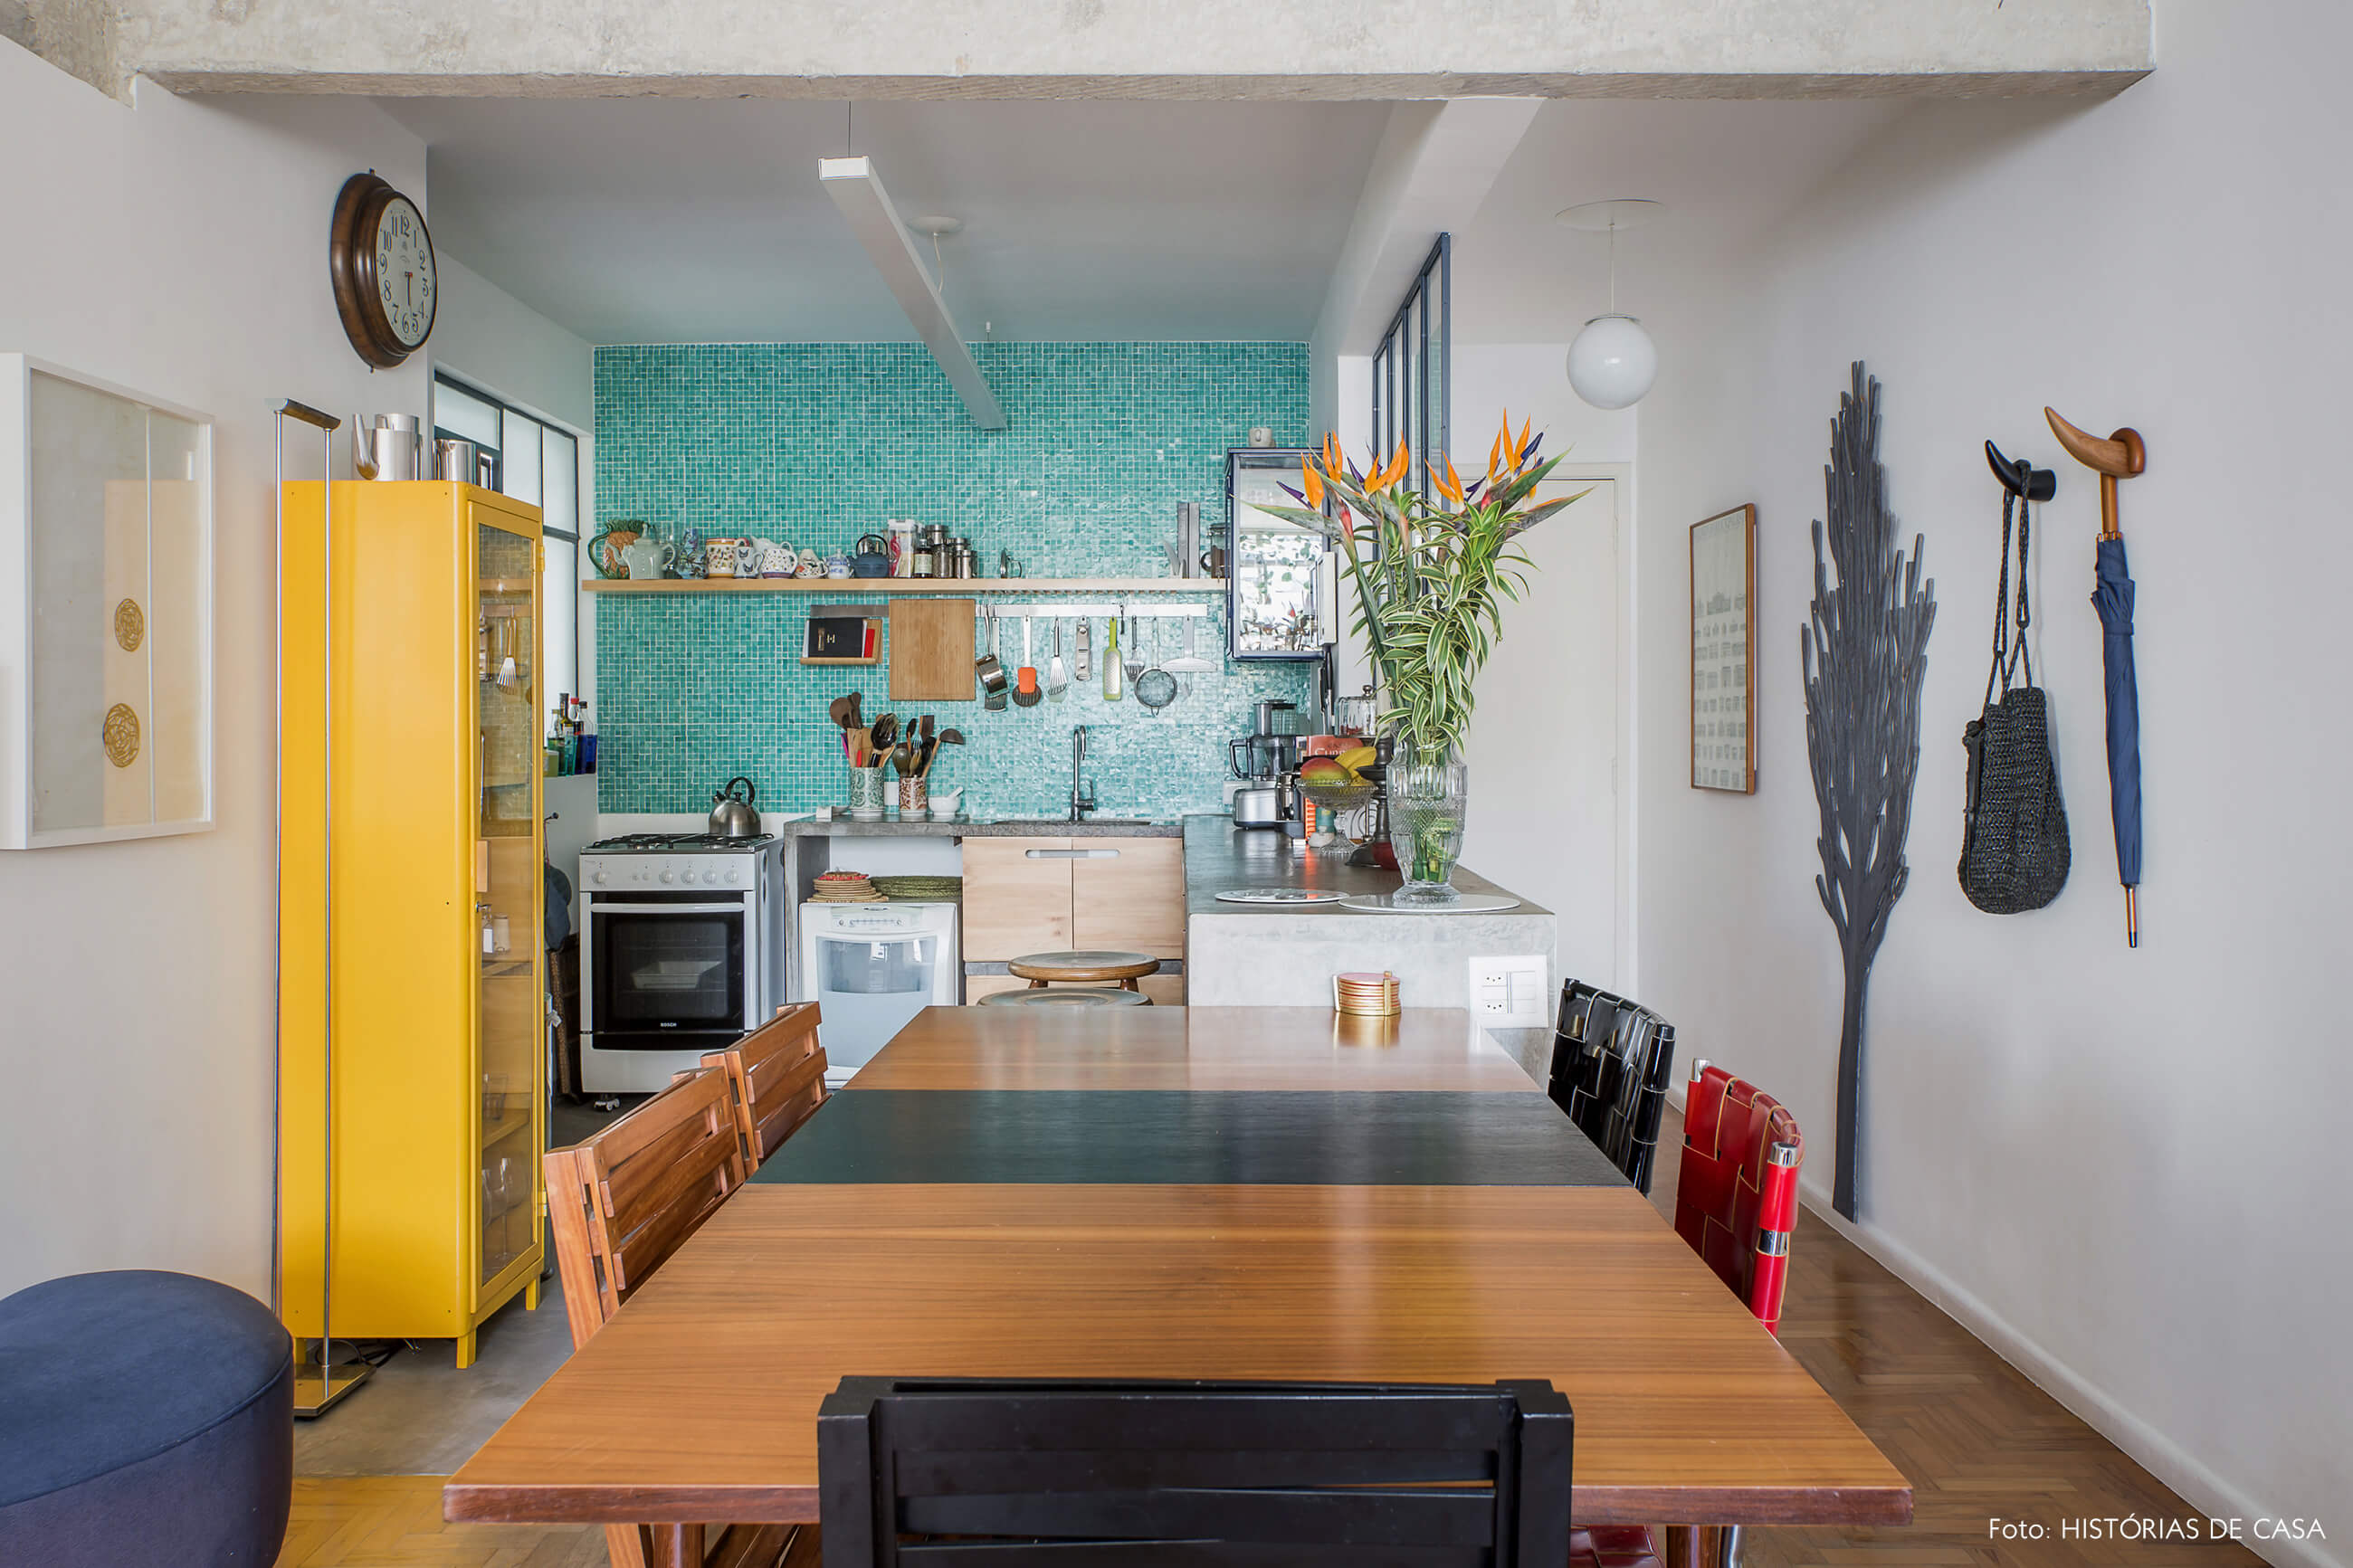 Apartamento com sala integrada com cozinha, e decoração colorida